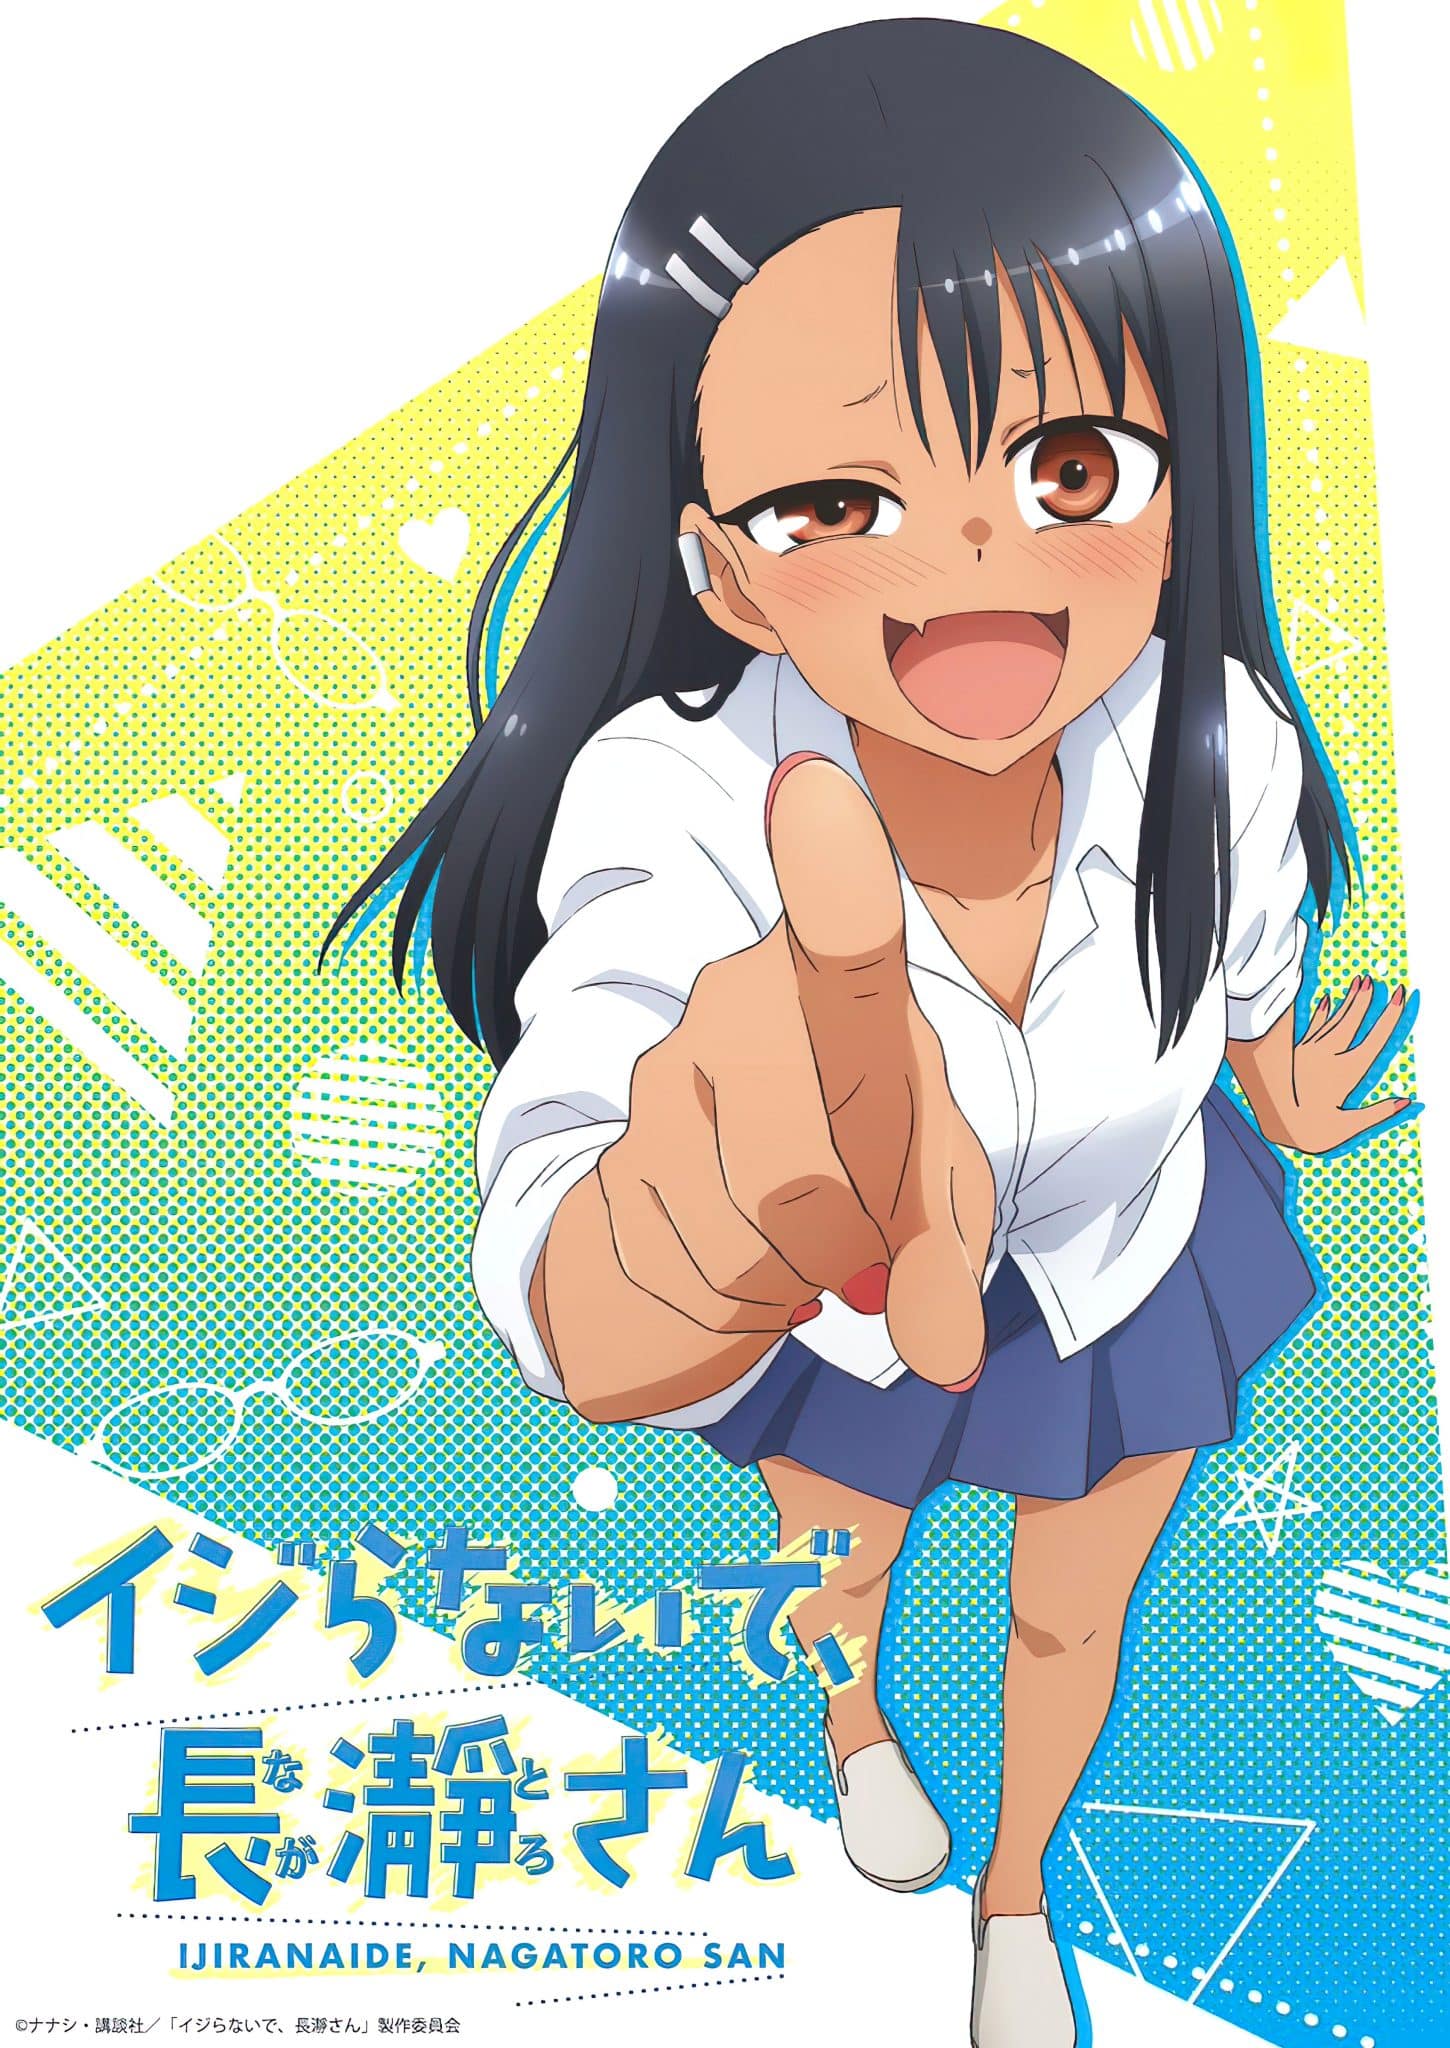 Annonce d'une adaptation en anime pour le manga Ijiranaide, Nagatoro-san